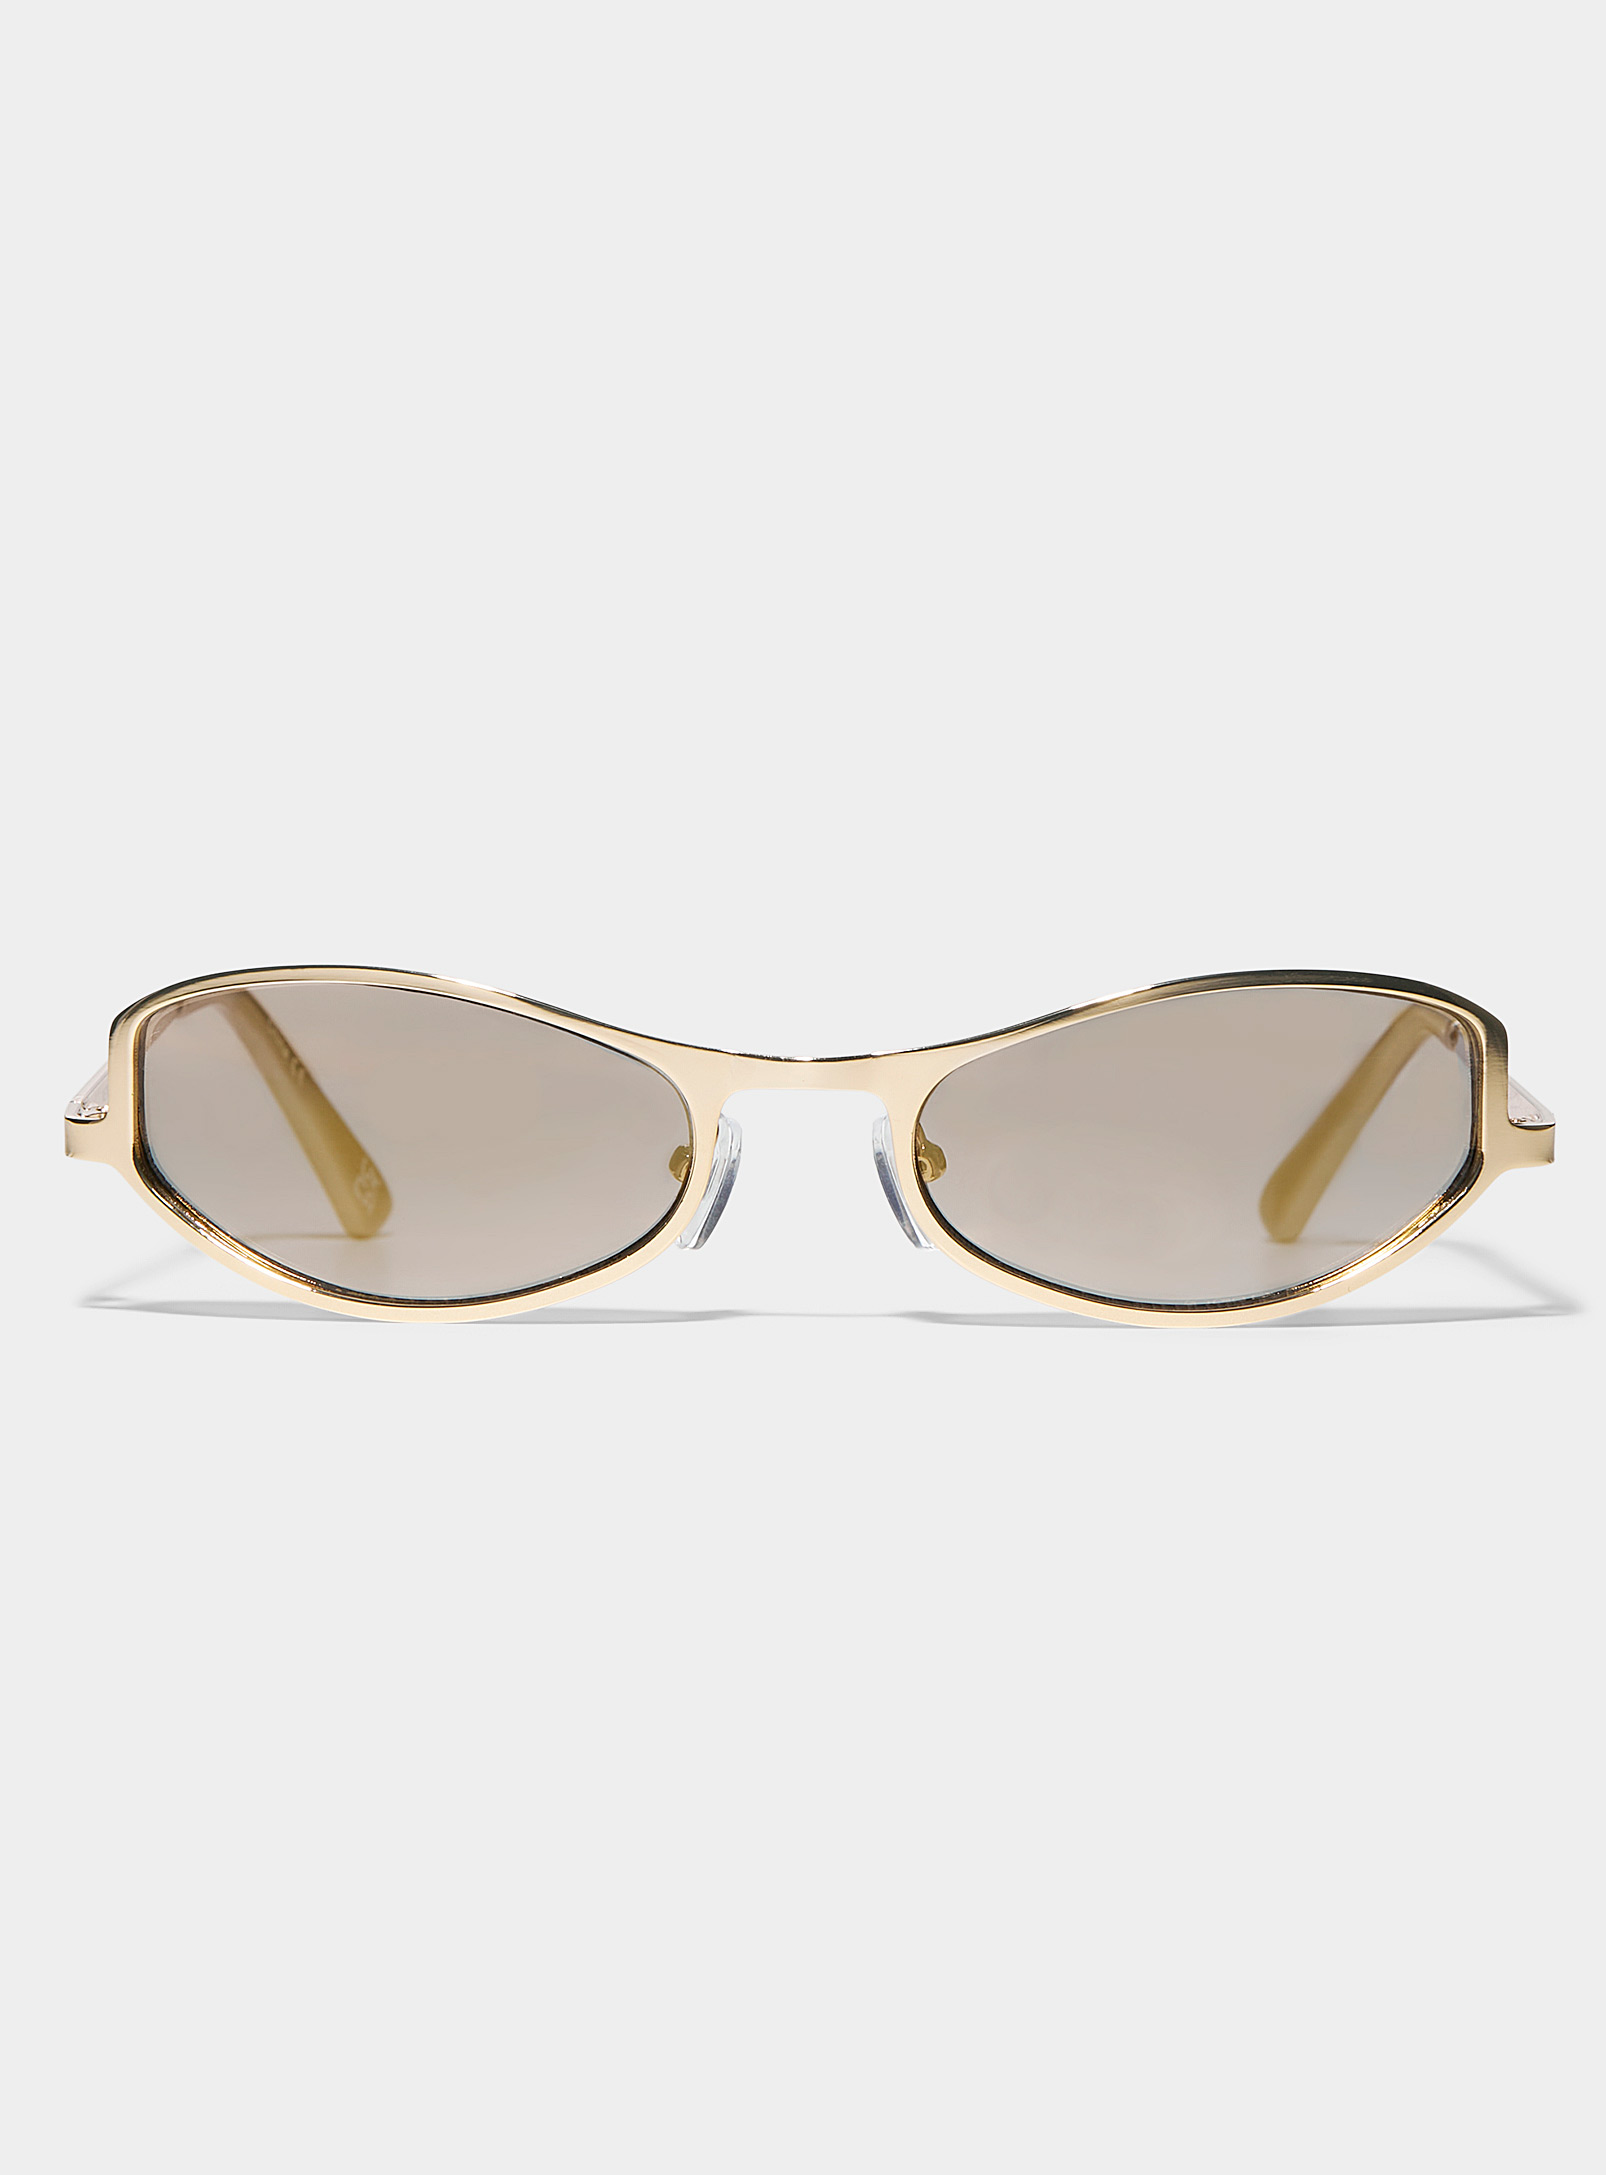 AIRE - Women's Retrograde futuristic sunglasses